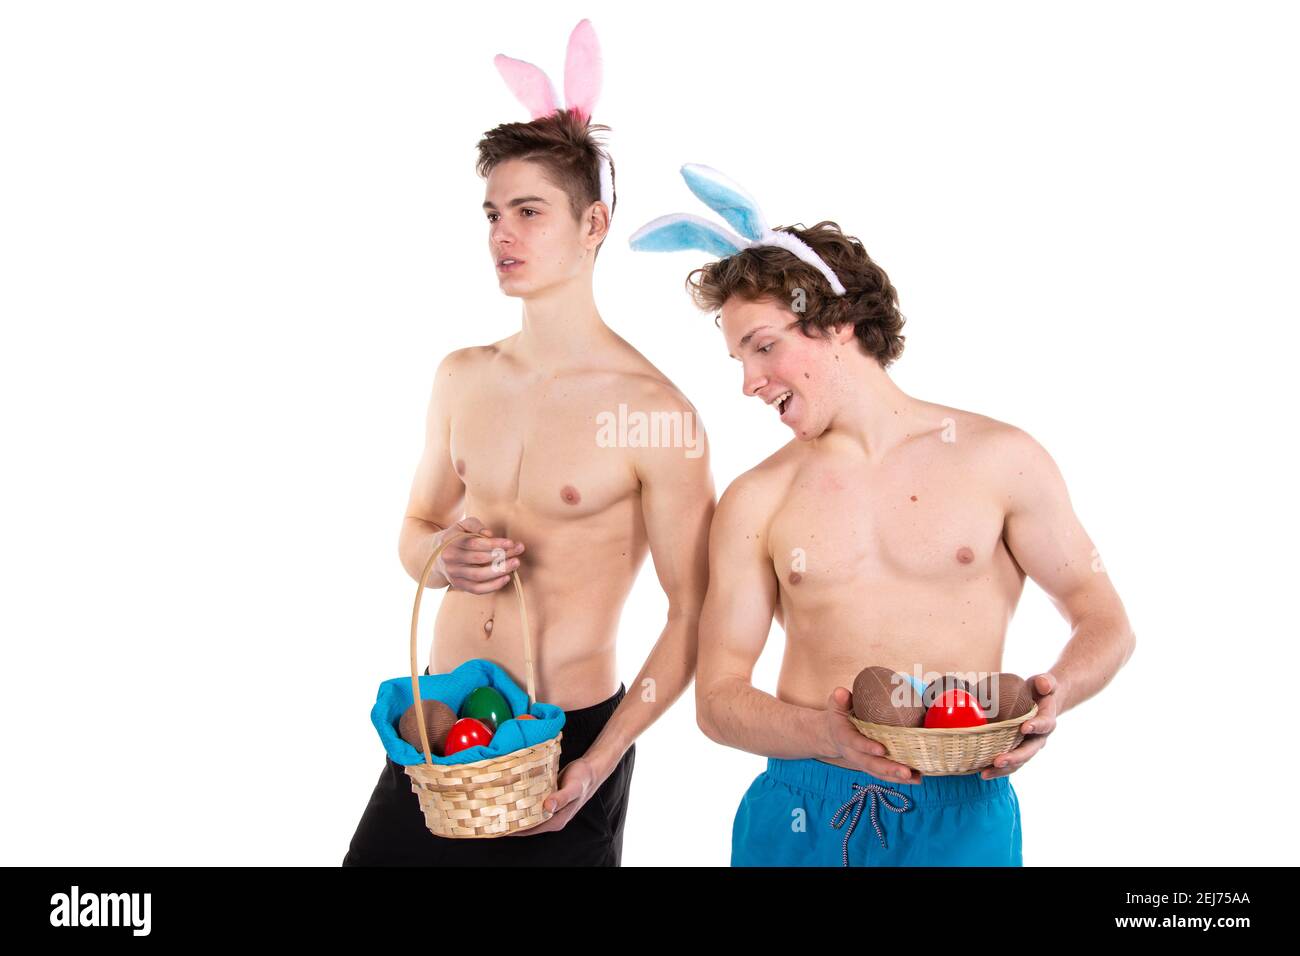 Feiertage und Wochenenden. Junges attraktives Paar zu Ostern in Hasen-Kostümen. Weißer Hintergrund. Stockfoto